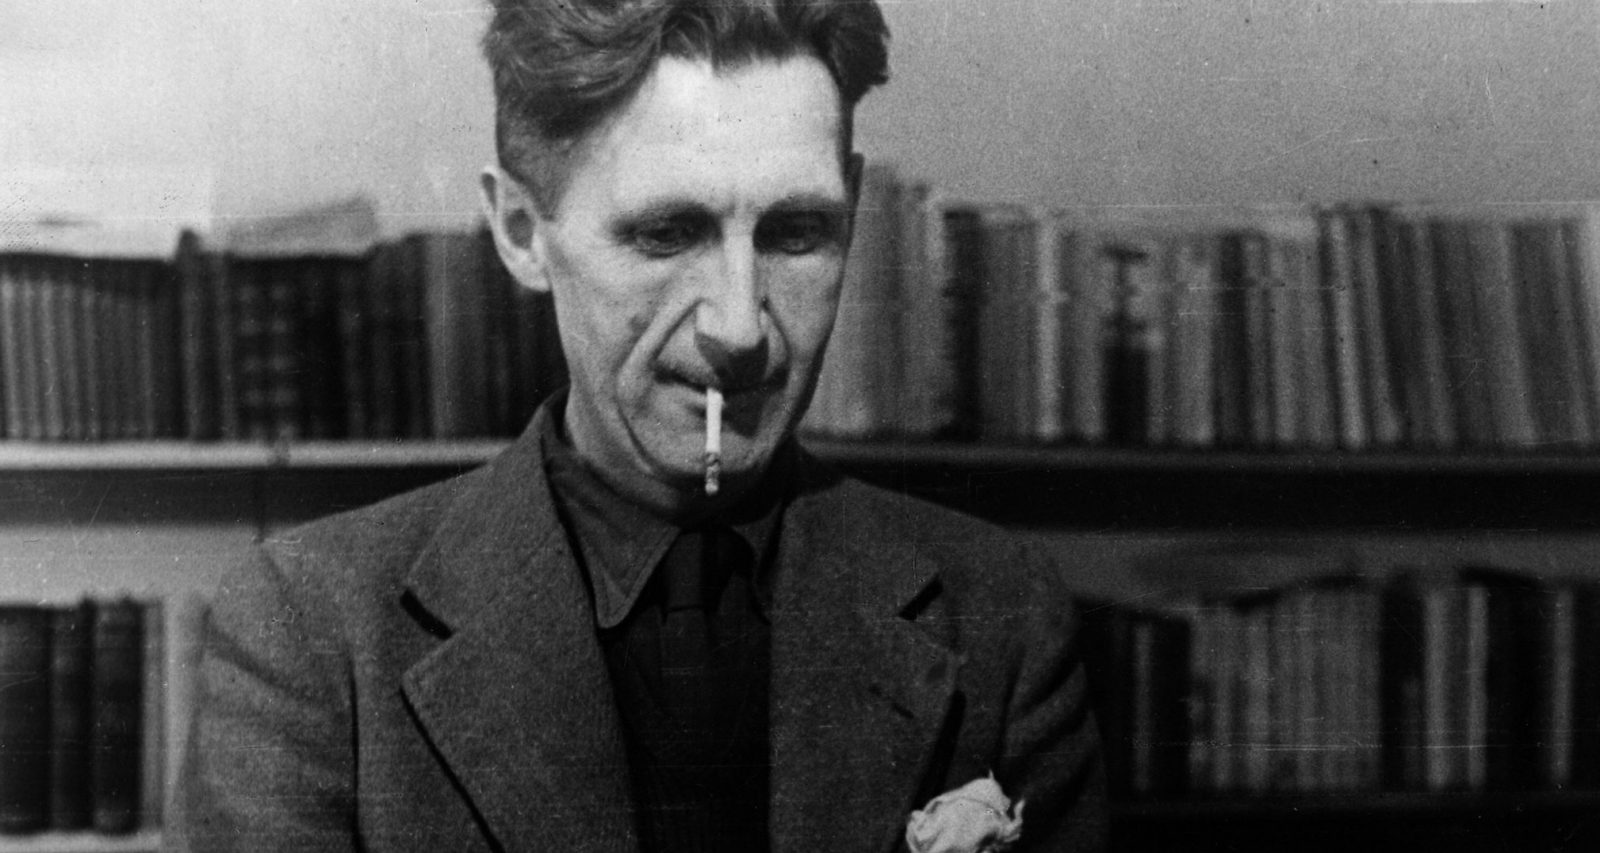 George Orwell spiato da Stalin durante la Guerra di Spagna. Scoperti i dispacci dei servizi segreti sovietici